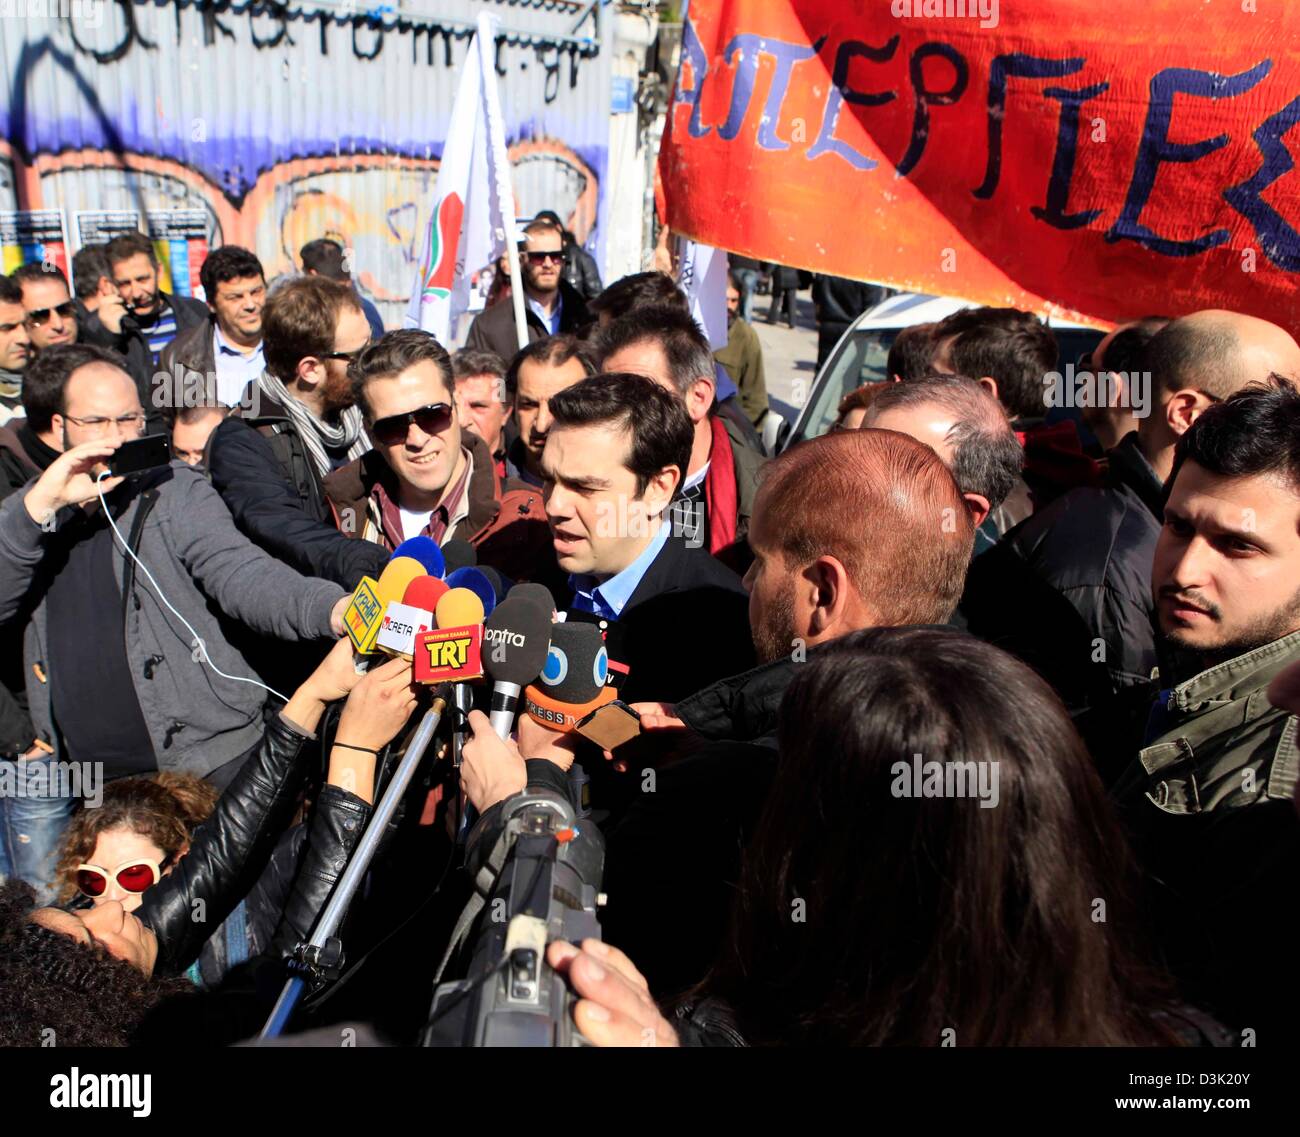 Alexis Tsipras della coalizione della sinistra radicale - sociale unitario anteriore (SYRIZA) parla ai media durante uno sciopero generale ad Atene, Grecia, 20 febbraio 2013. I sindacati GSEE e ADEDY chiamato per lo sciopero. Foto: Giorgos Nikolaidis/dpa/Alamy Live News Foto Stock